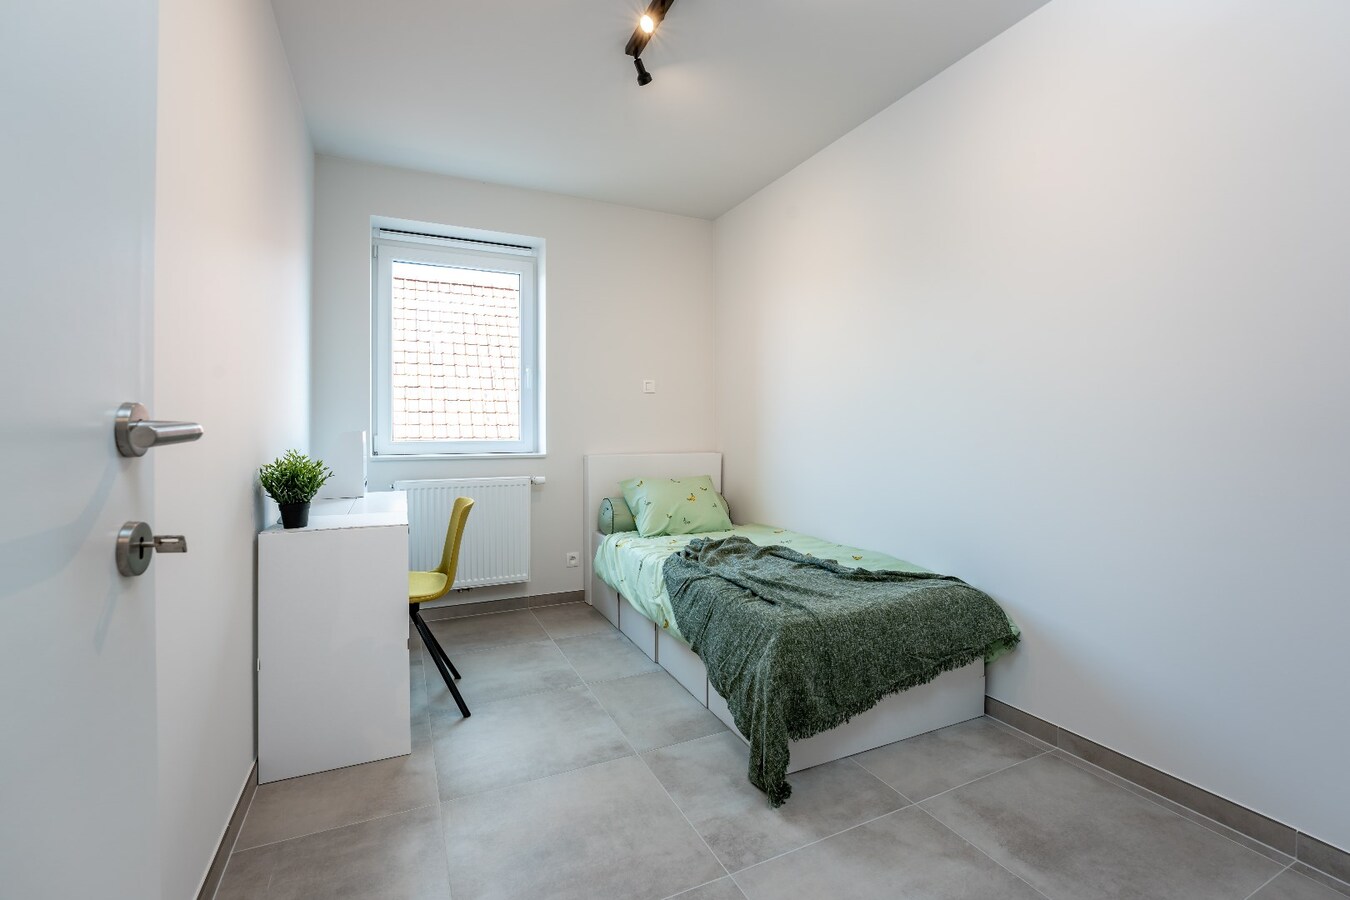 Gelijkvloers nieuwbouwappartement met 2 slaapkamers in Residentie Geuze St-Louis te Ingelmunster 